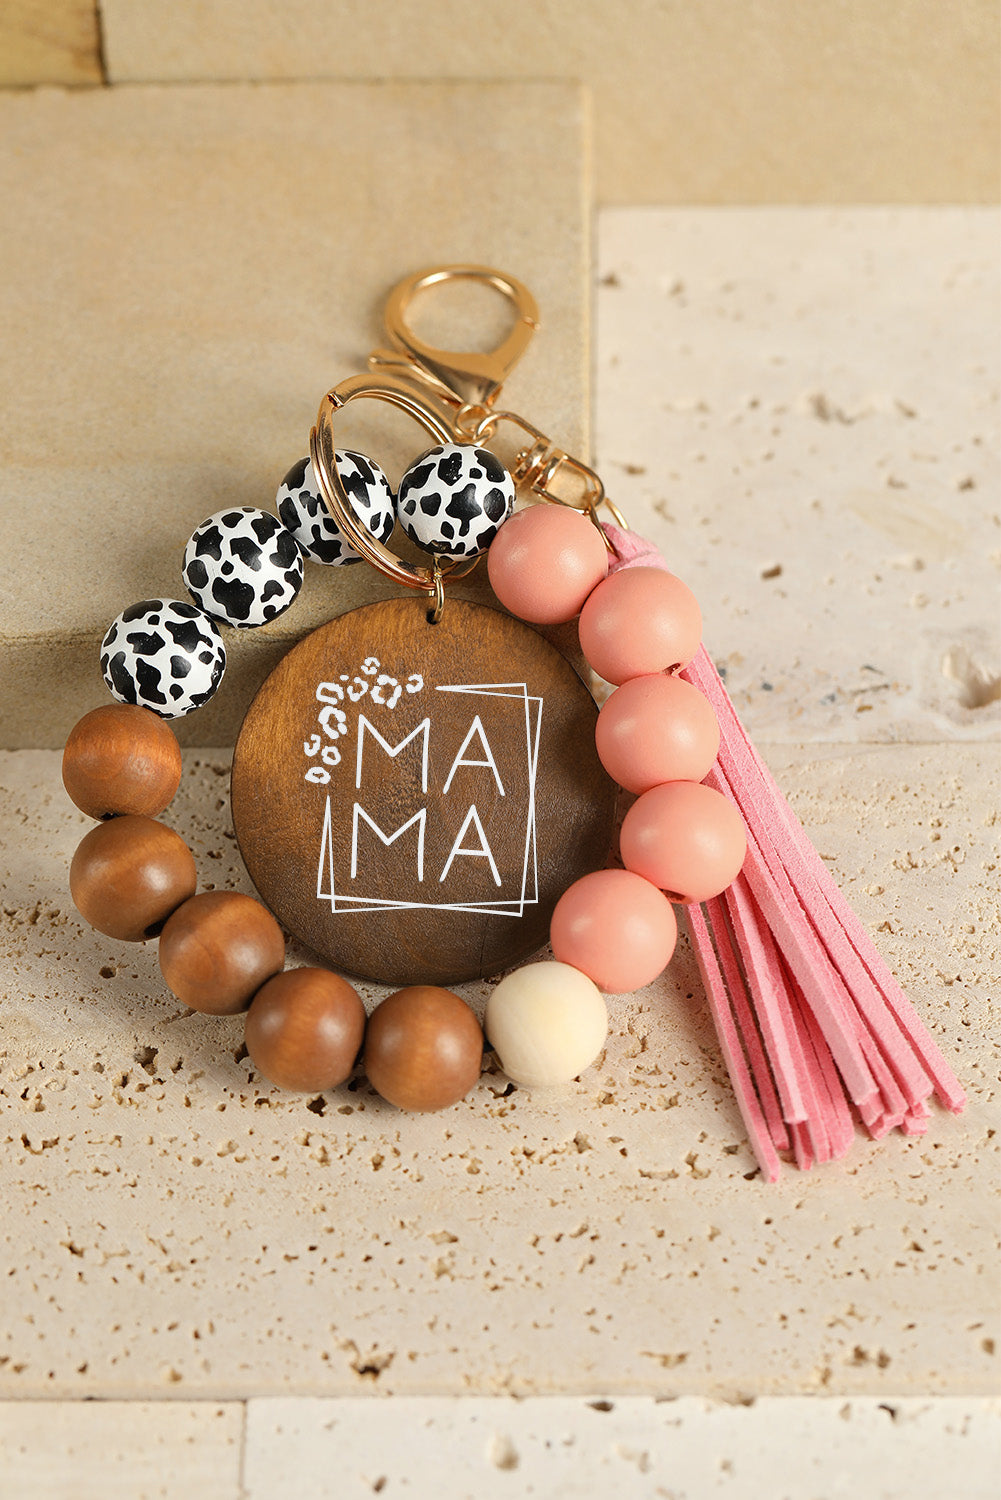 Pink Mama Leopard Wood Beads Fringe Bracelet Keychain